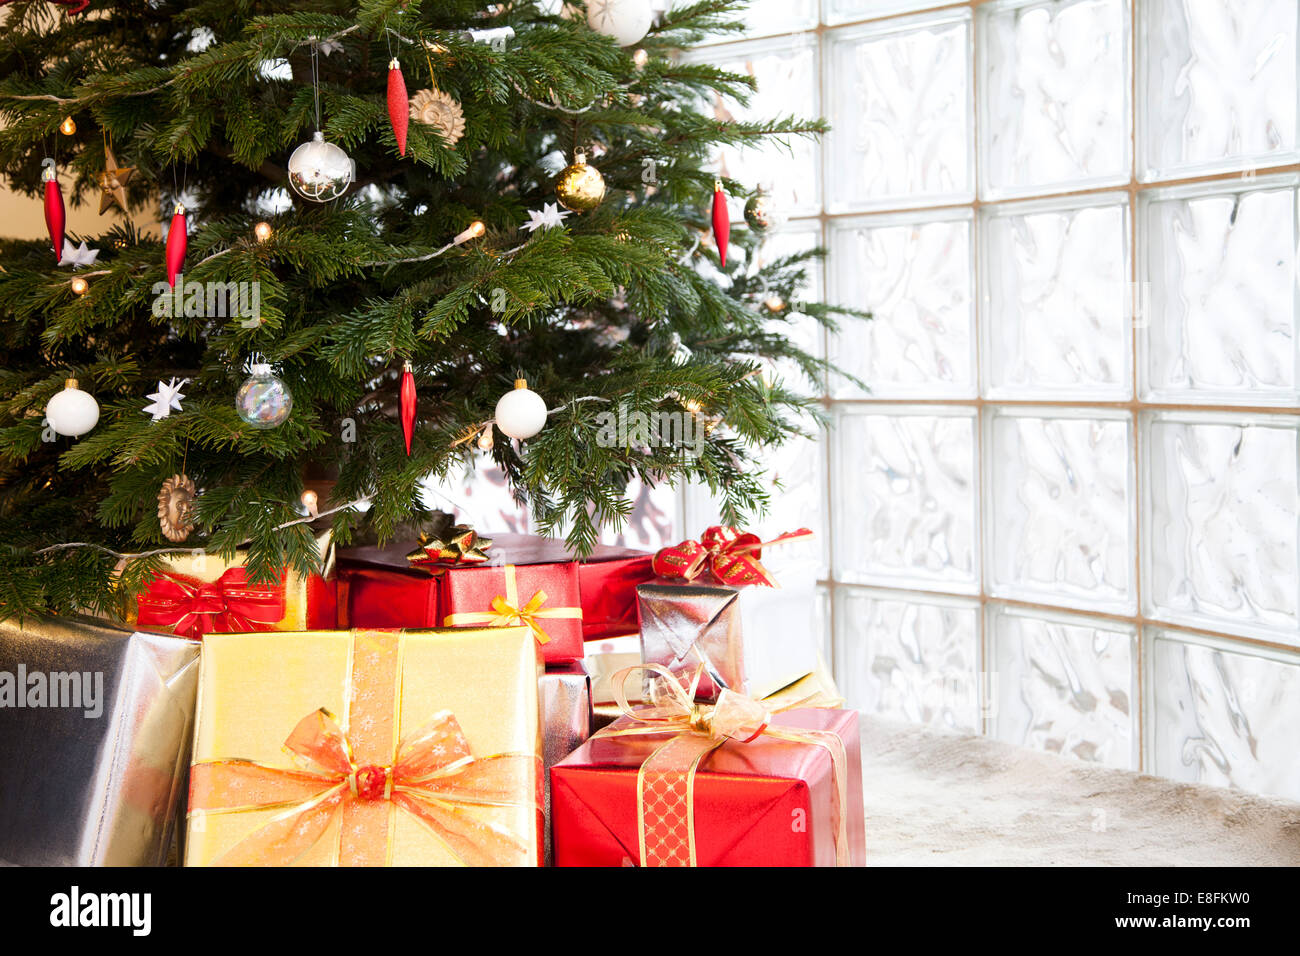 Cerca de regalos debajo del árbol de Navidad Foto de stock